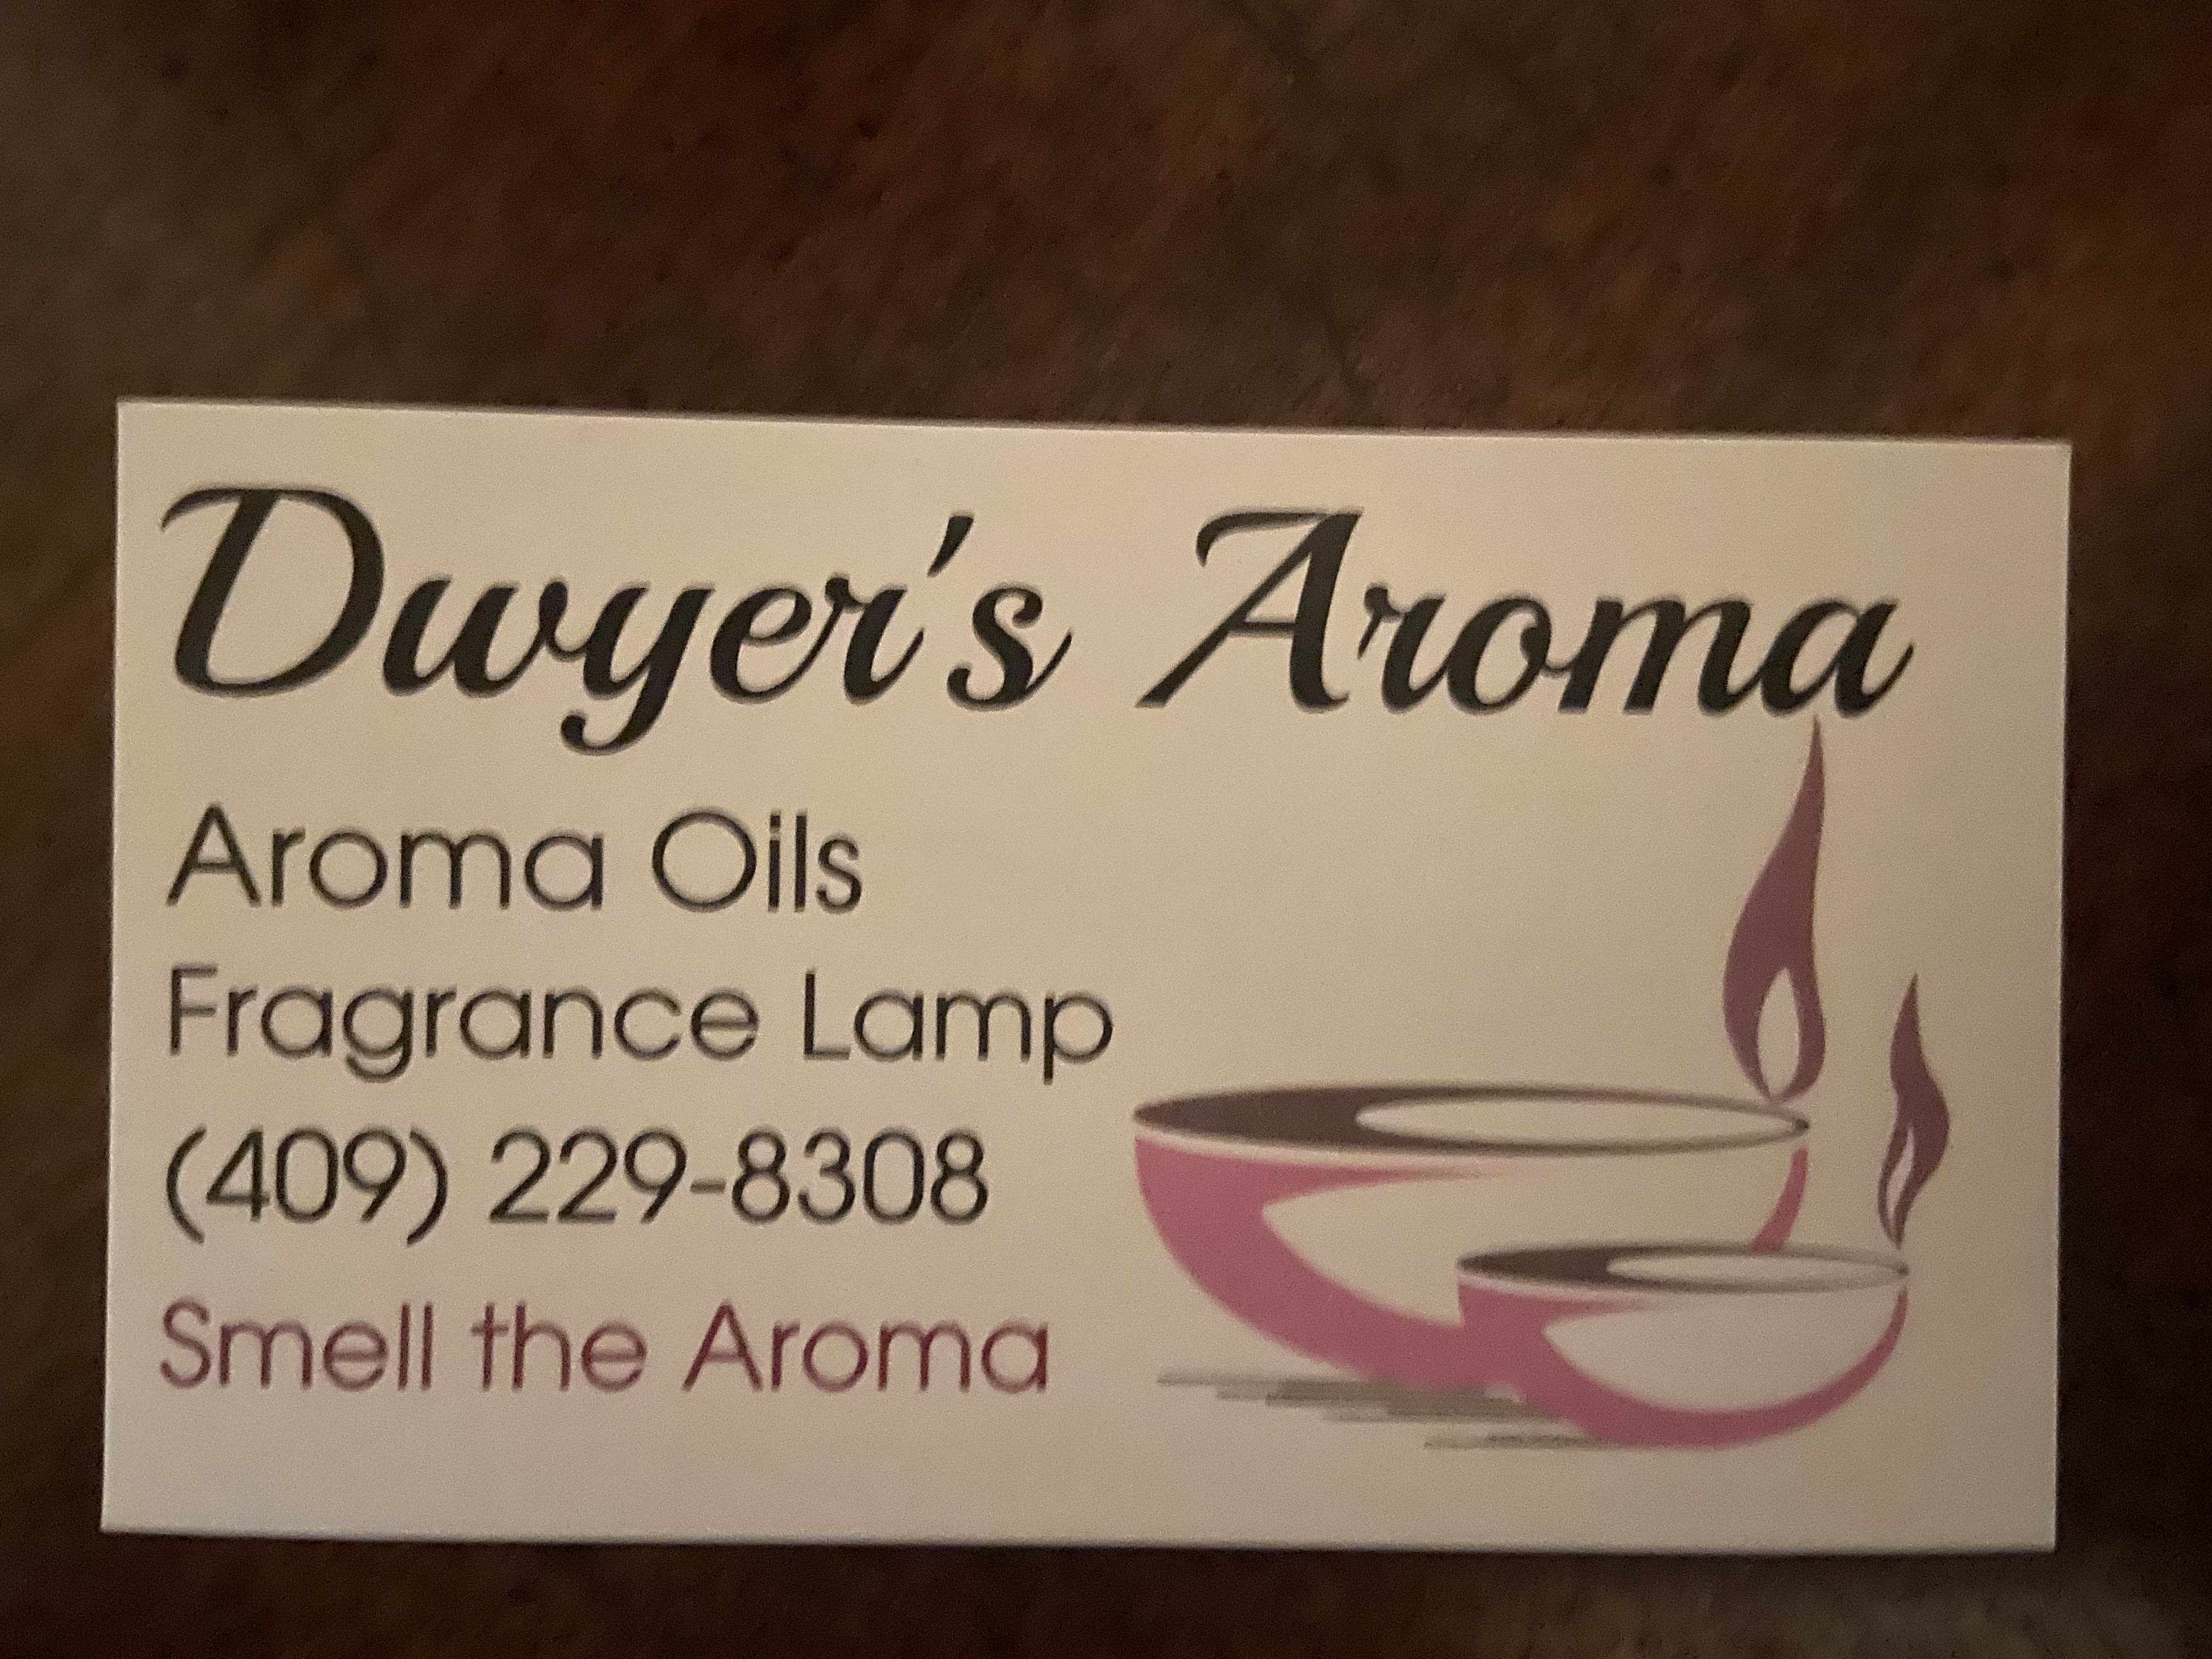 Dwyer’s Aroma